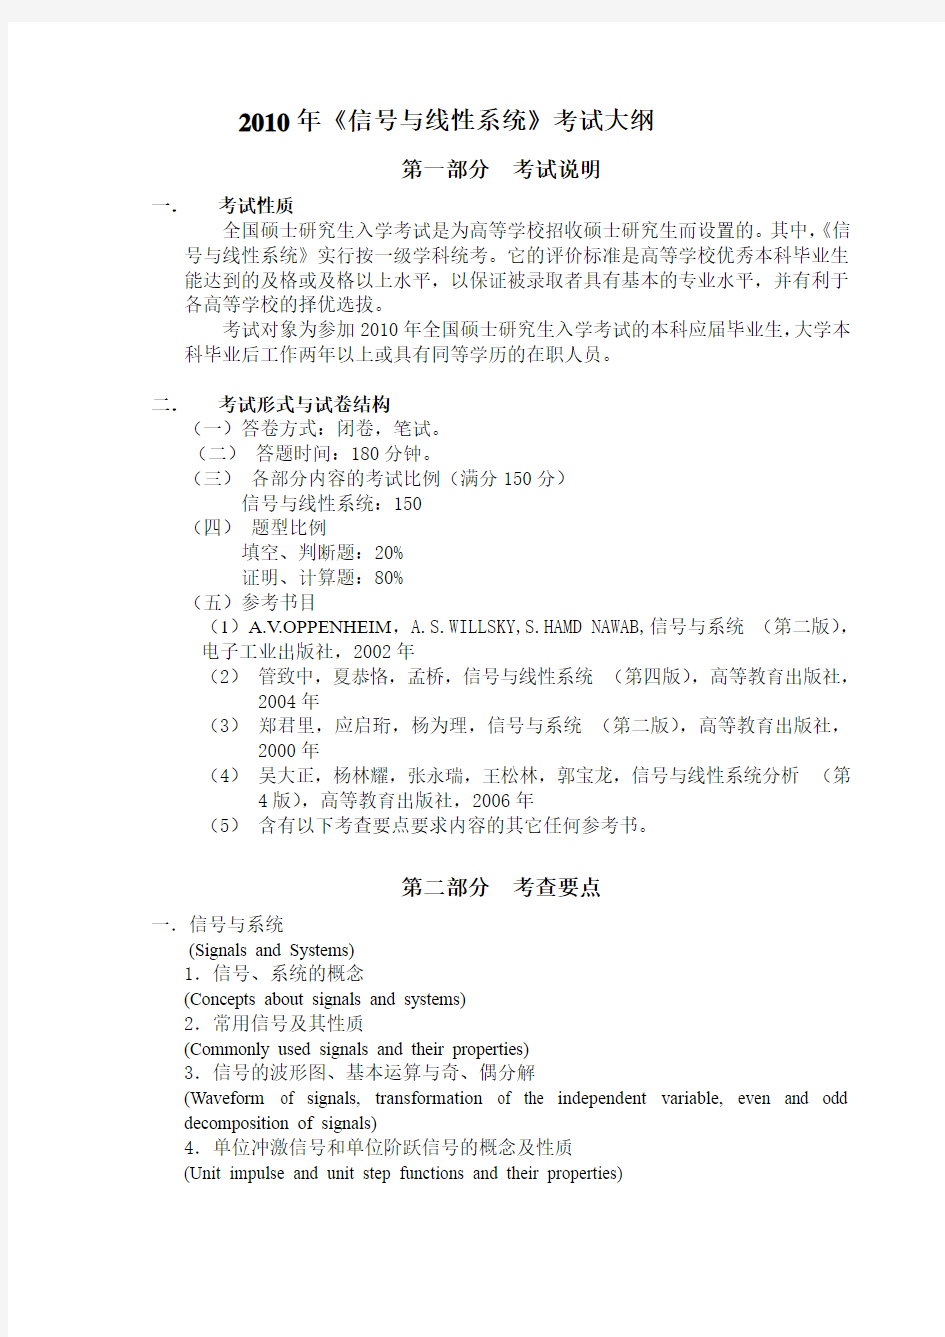 华科,华中科技大学电信系,2010年《信号与线性系统》考试大纲